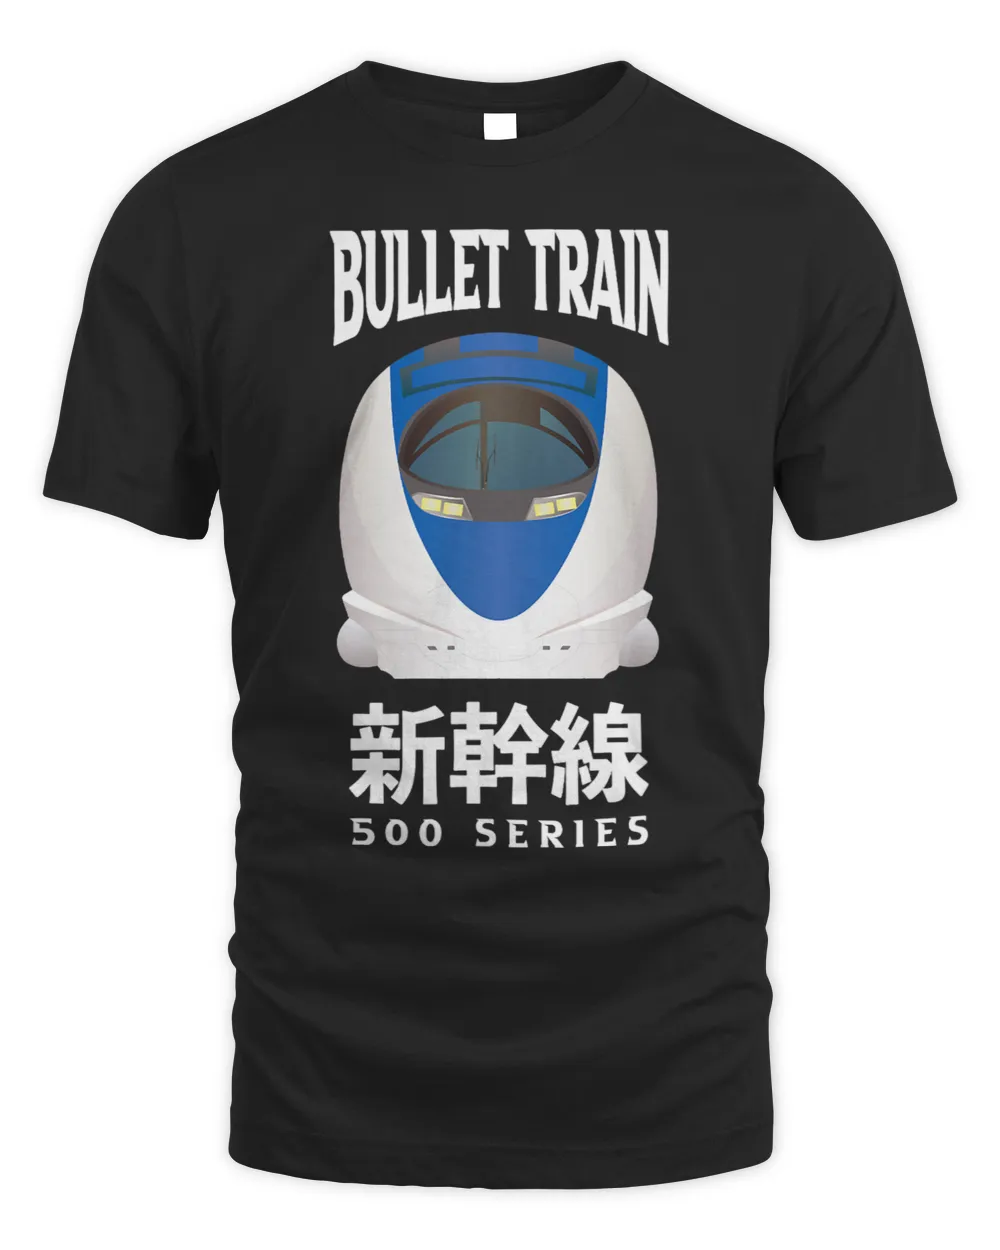 Bullet Train Shinkansen Japanese Kanji 500 Series Japan Rail